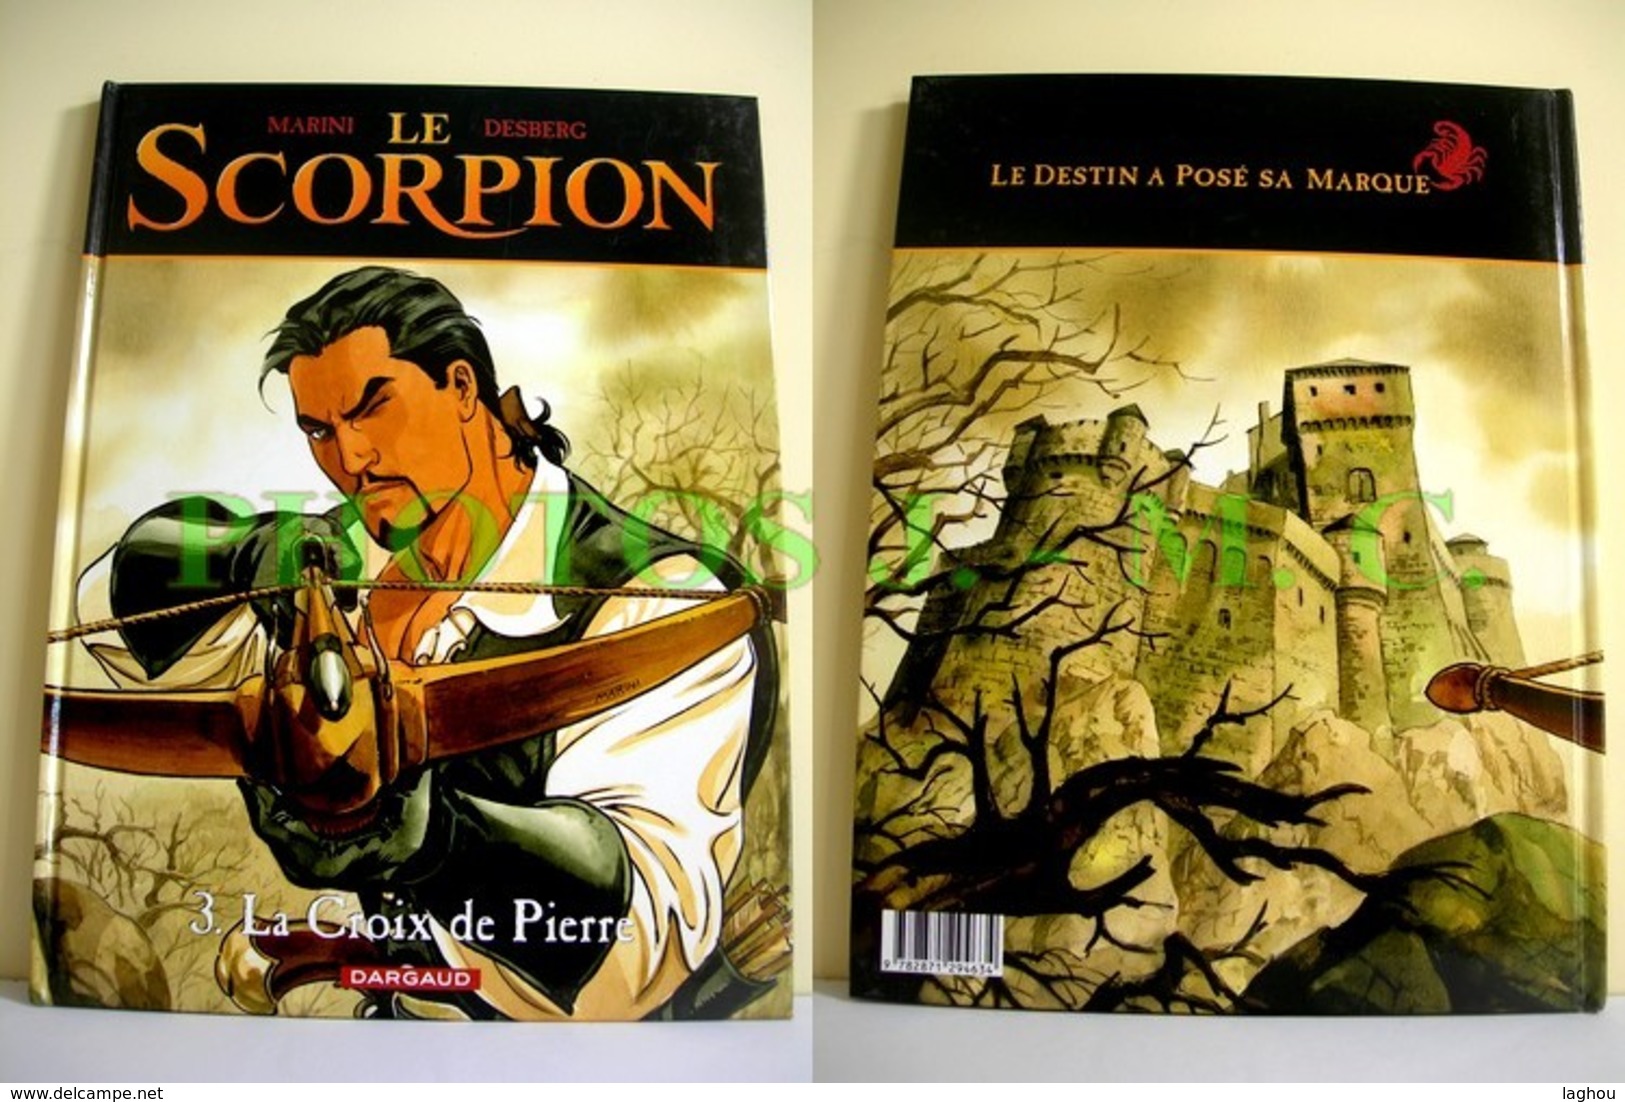 LA CROIX DE PIERRE - Scorpion, Le